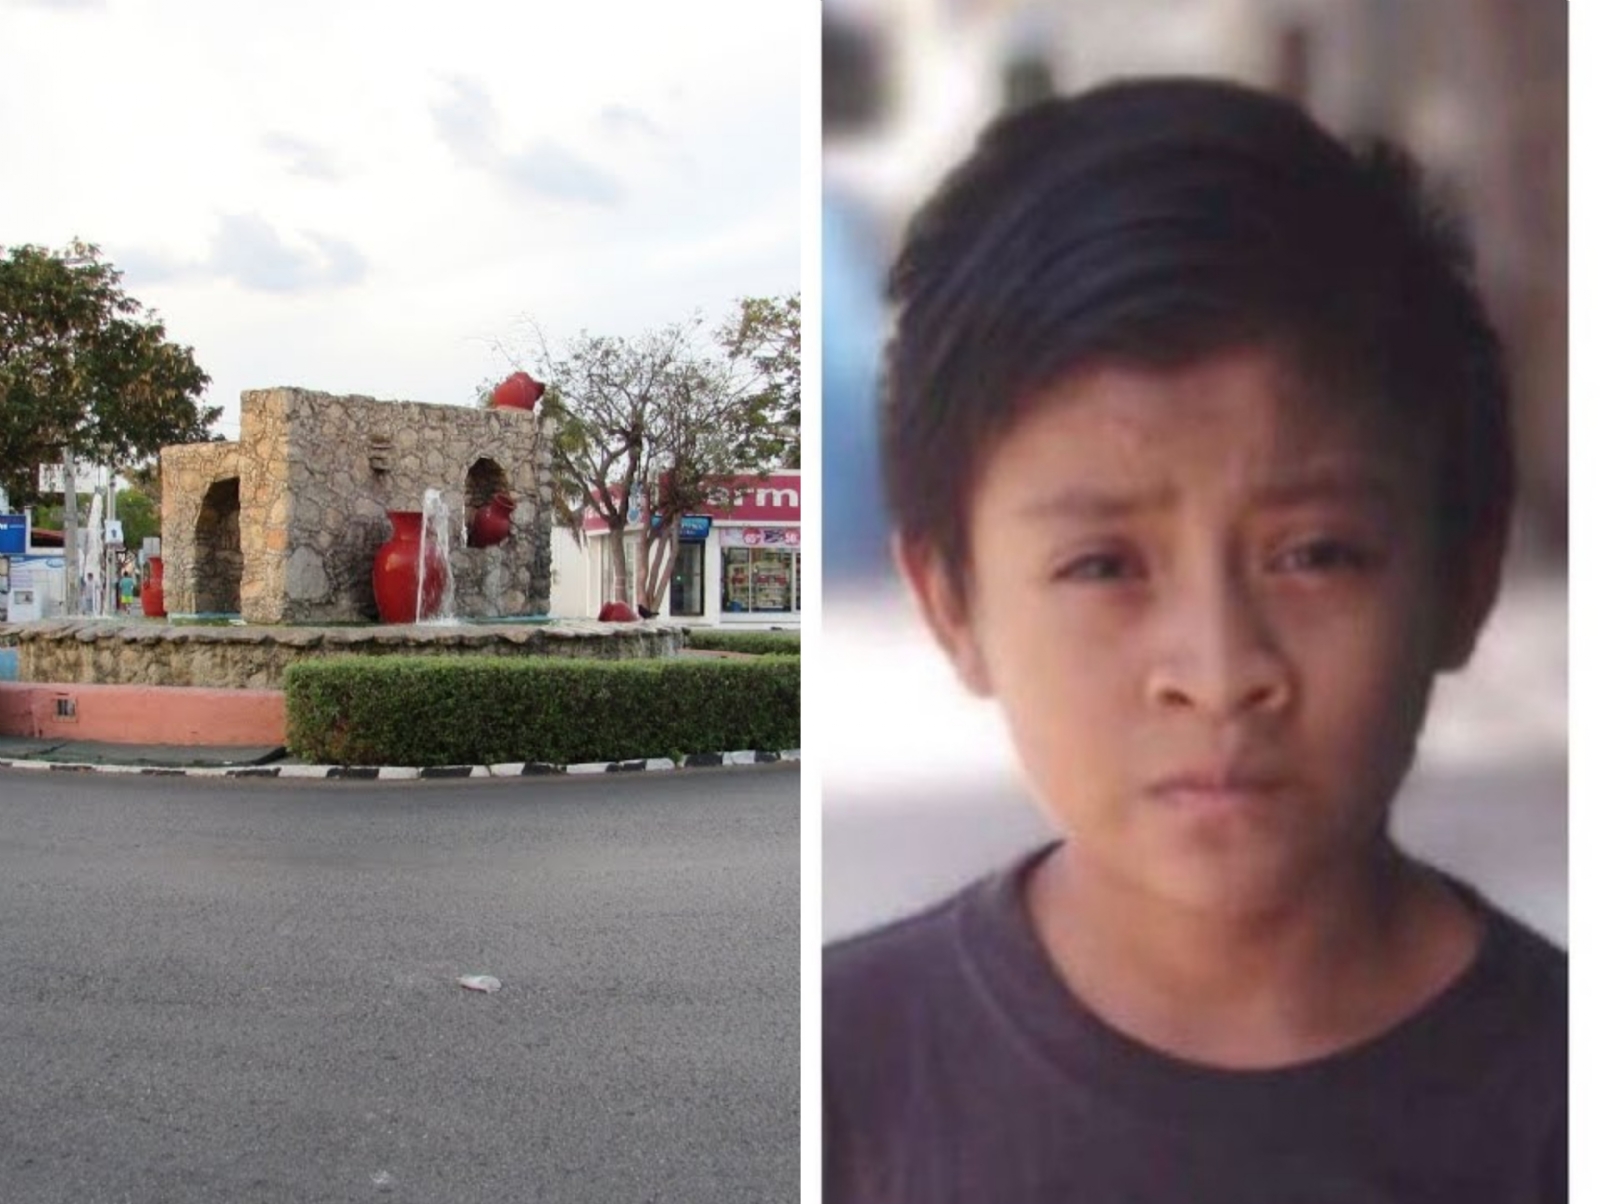 Desaparece niño de 9 años en Mérida, Yucatán; activan Alerta Amber